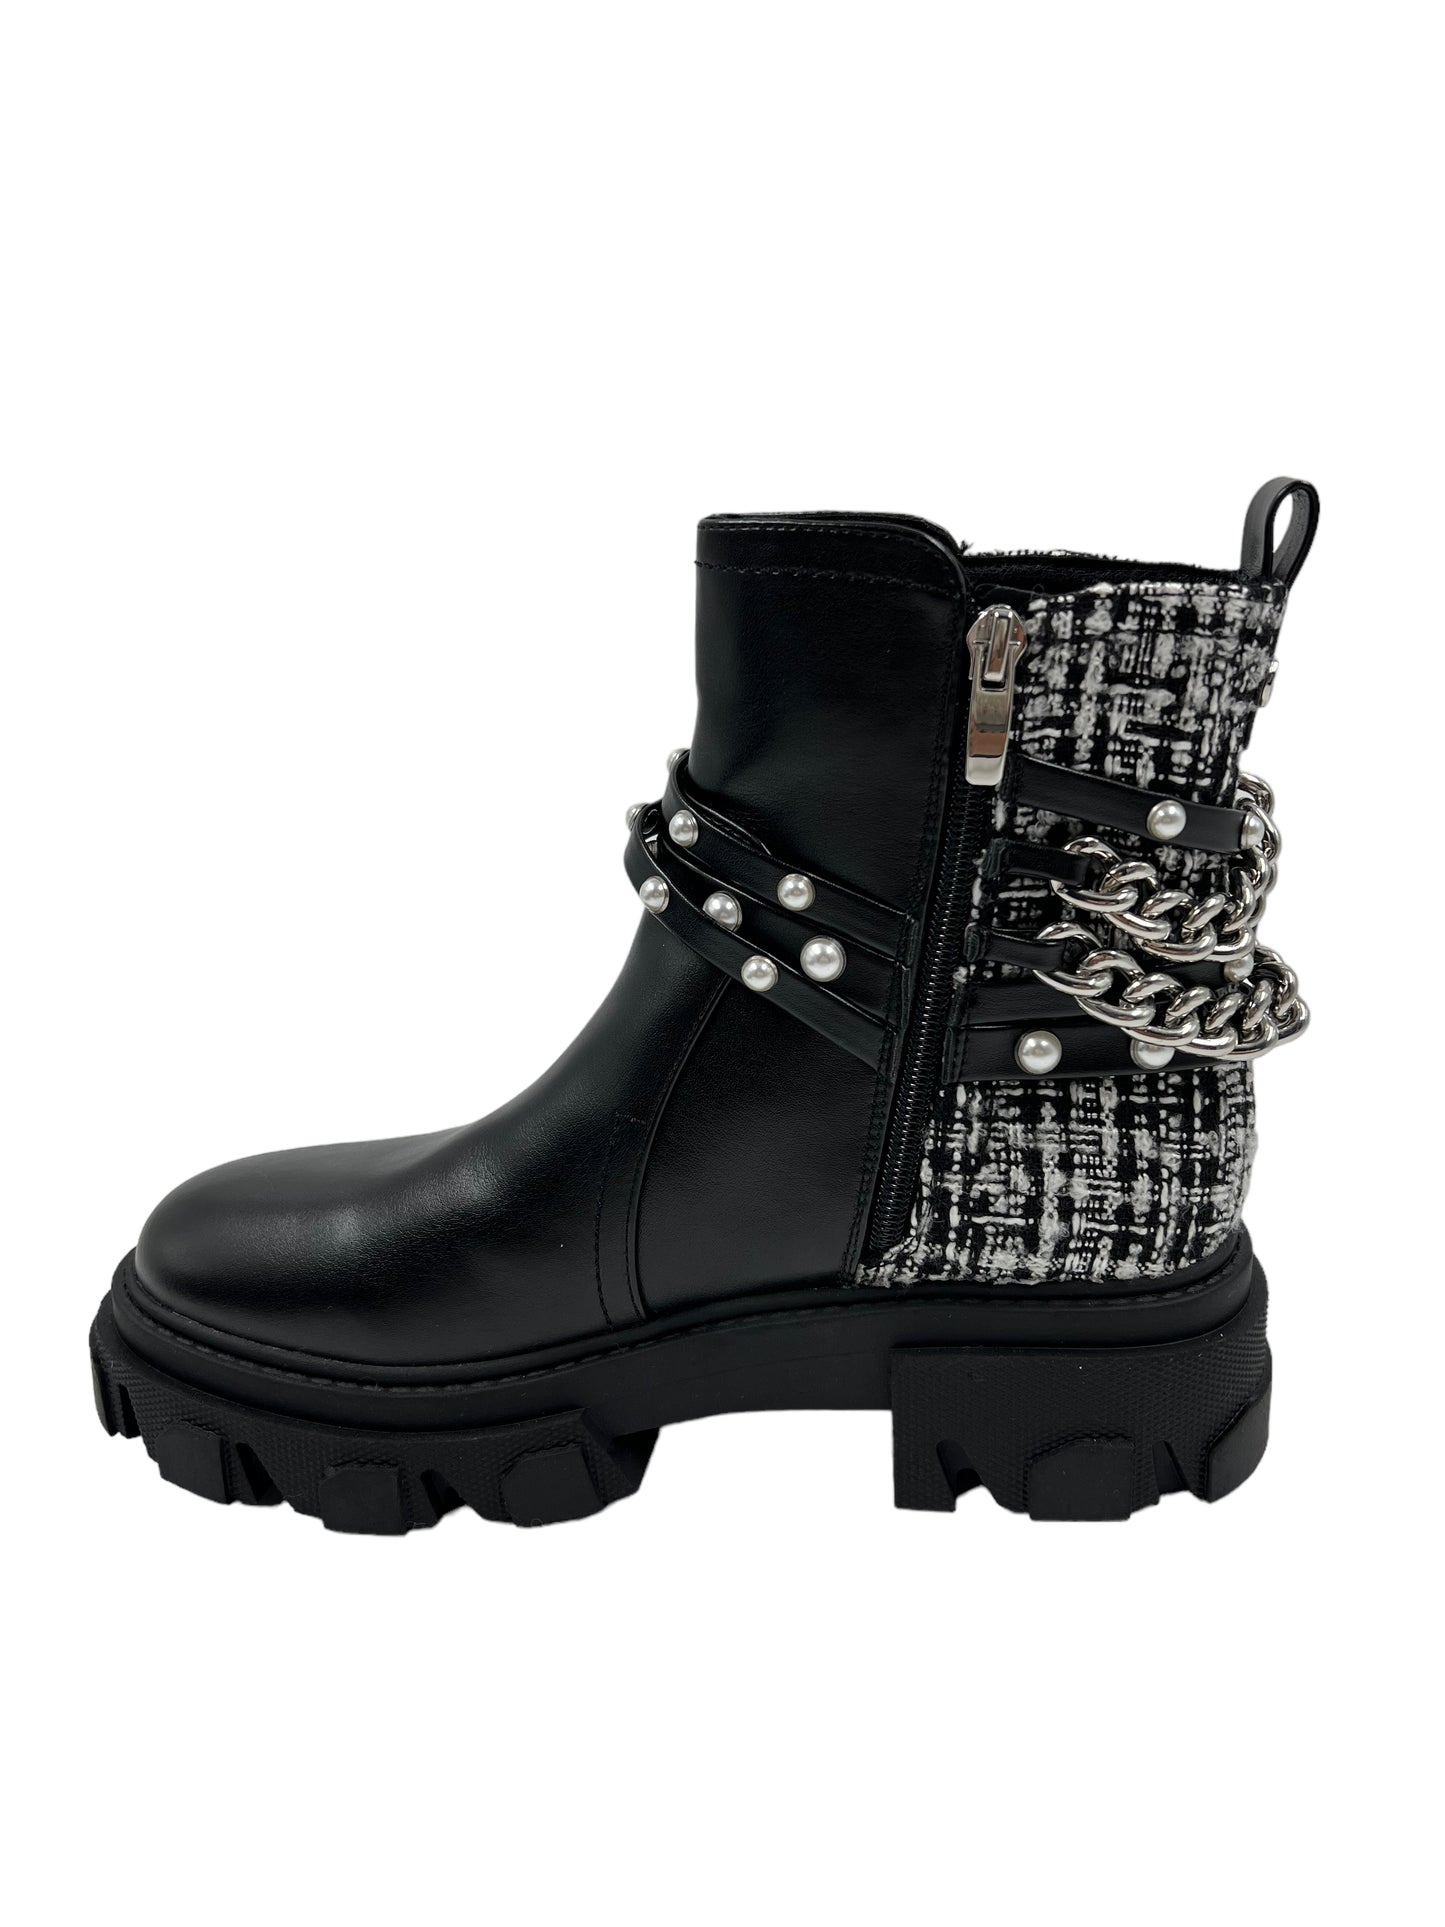 Nine West Size 8 Black Cearlz3 Embellished Tweed Ankle Boots